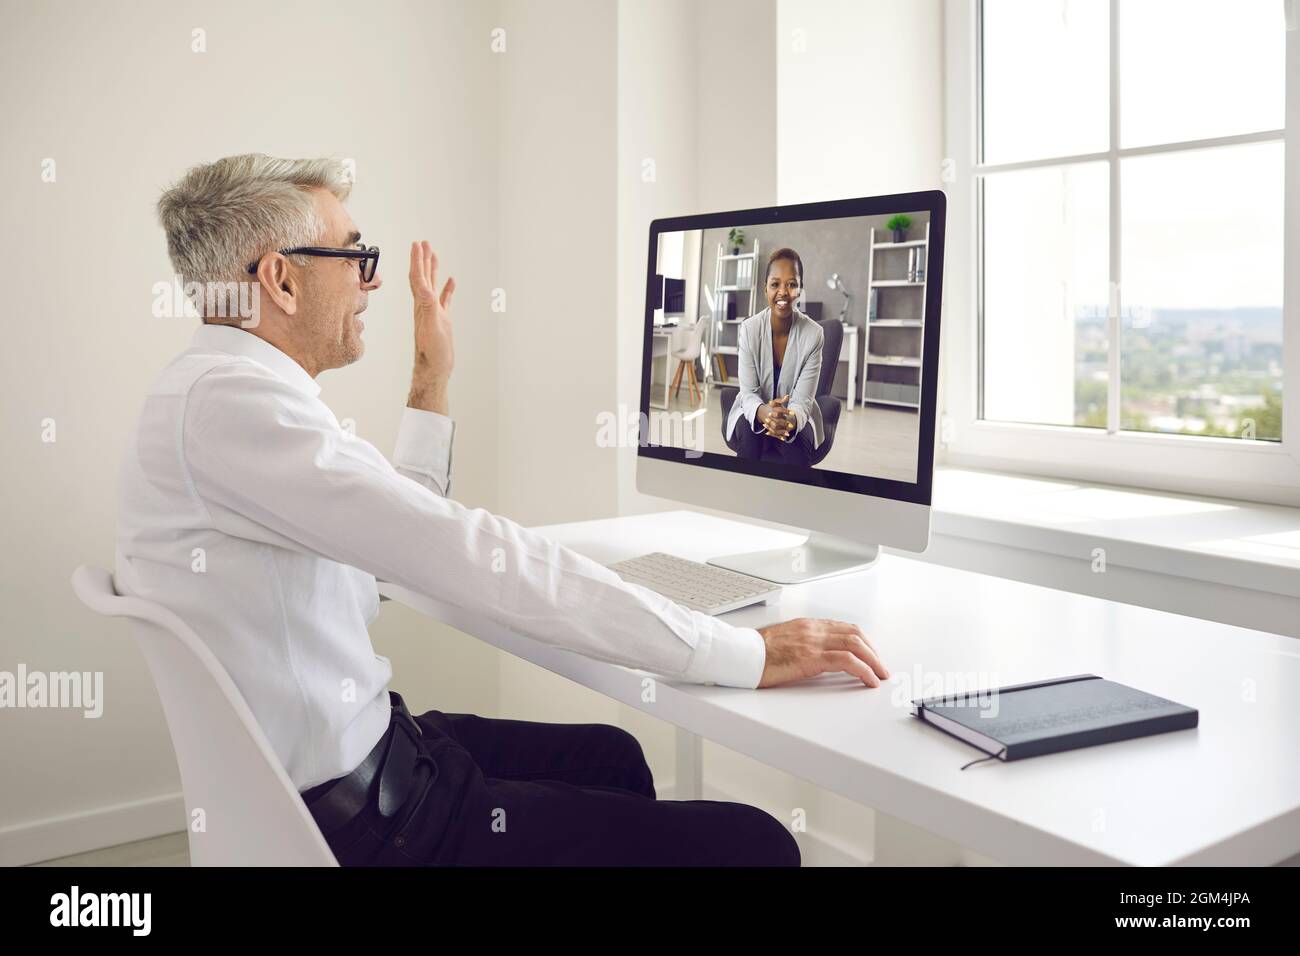 Un homme s'est fait un bonjour sur l'écran de l'ordinateur au début d'une réunion d'affaires virtuelle Banque D'Images